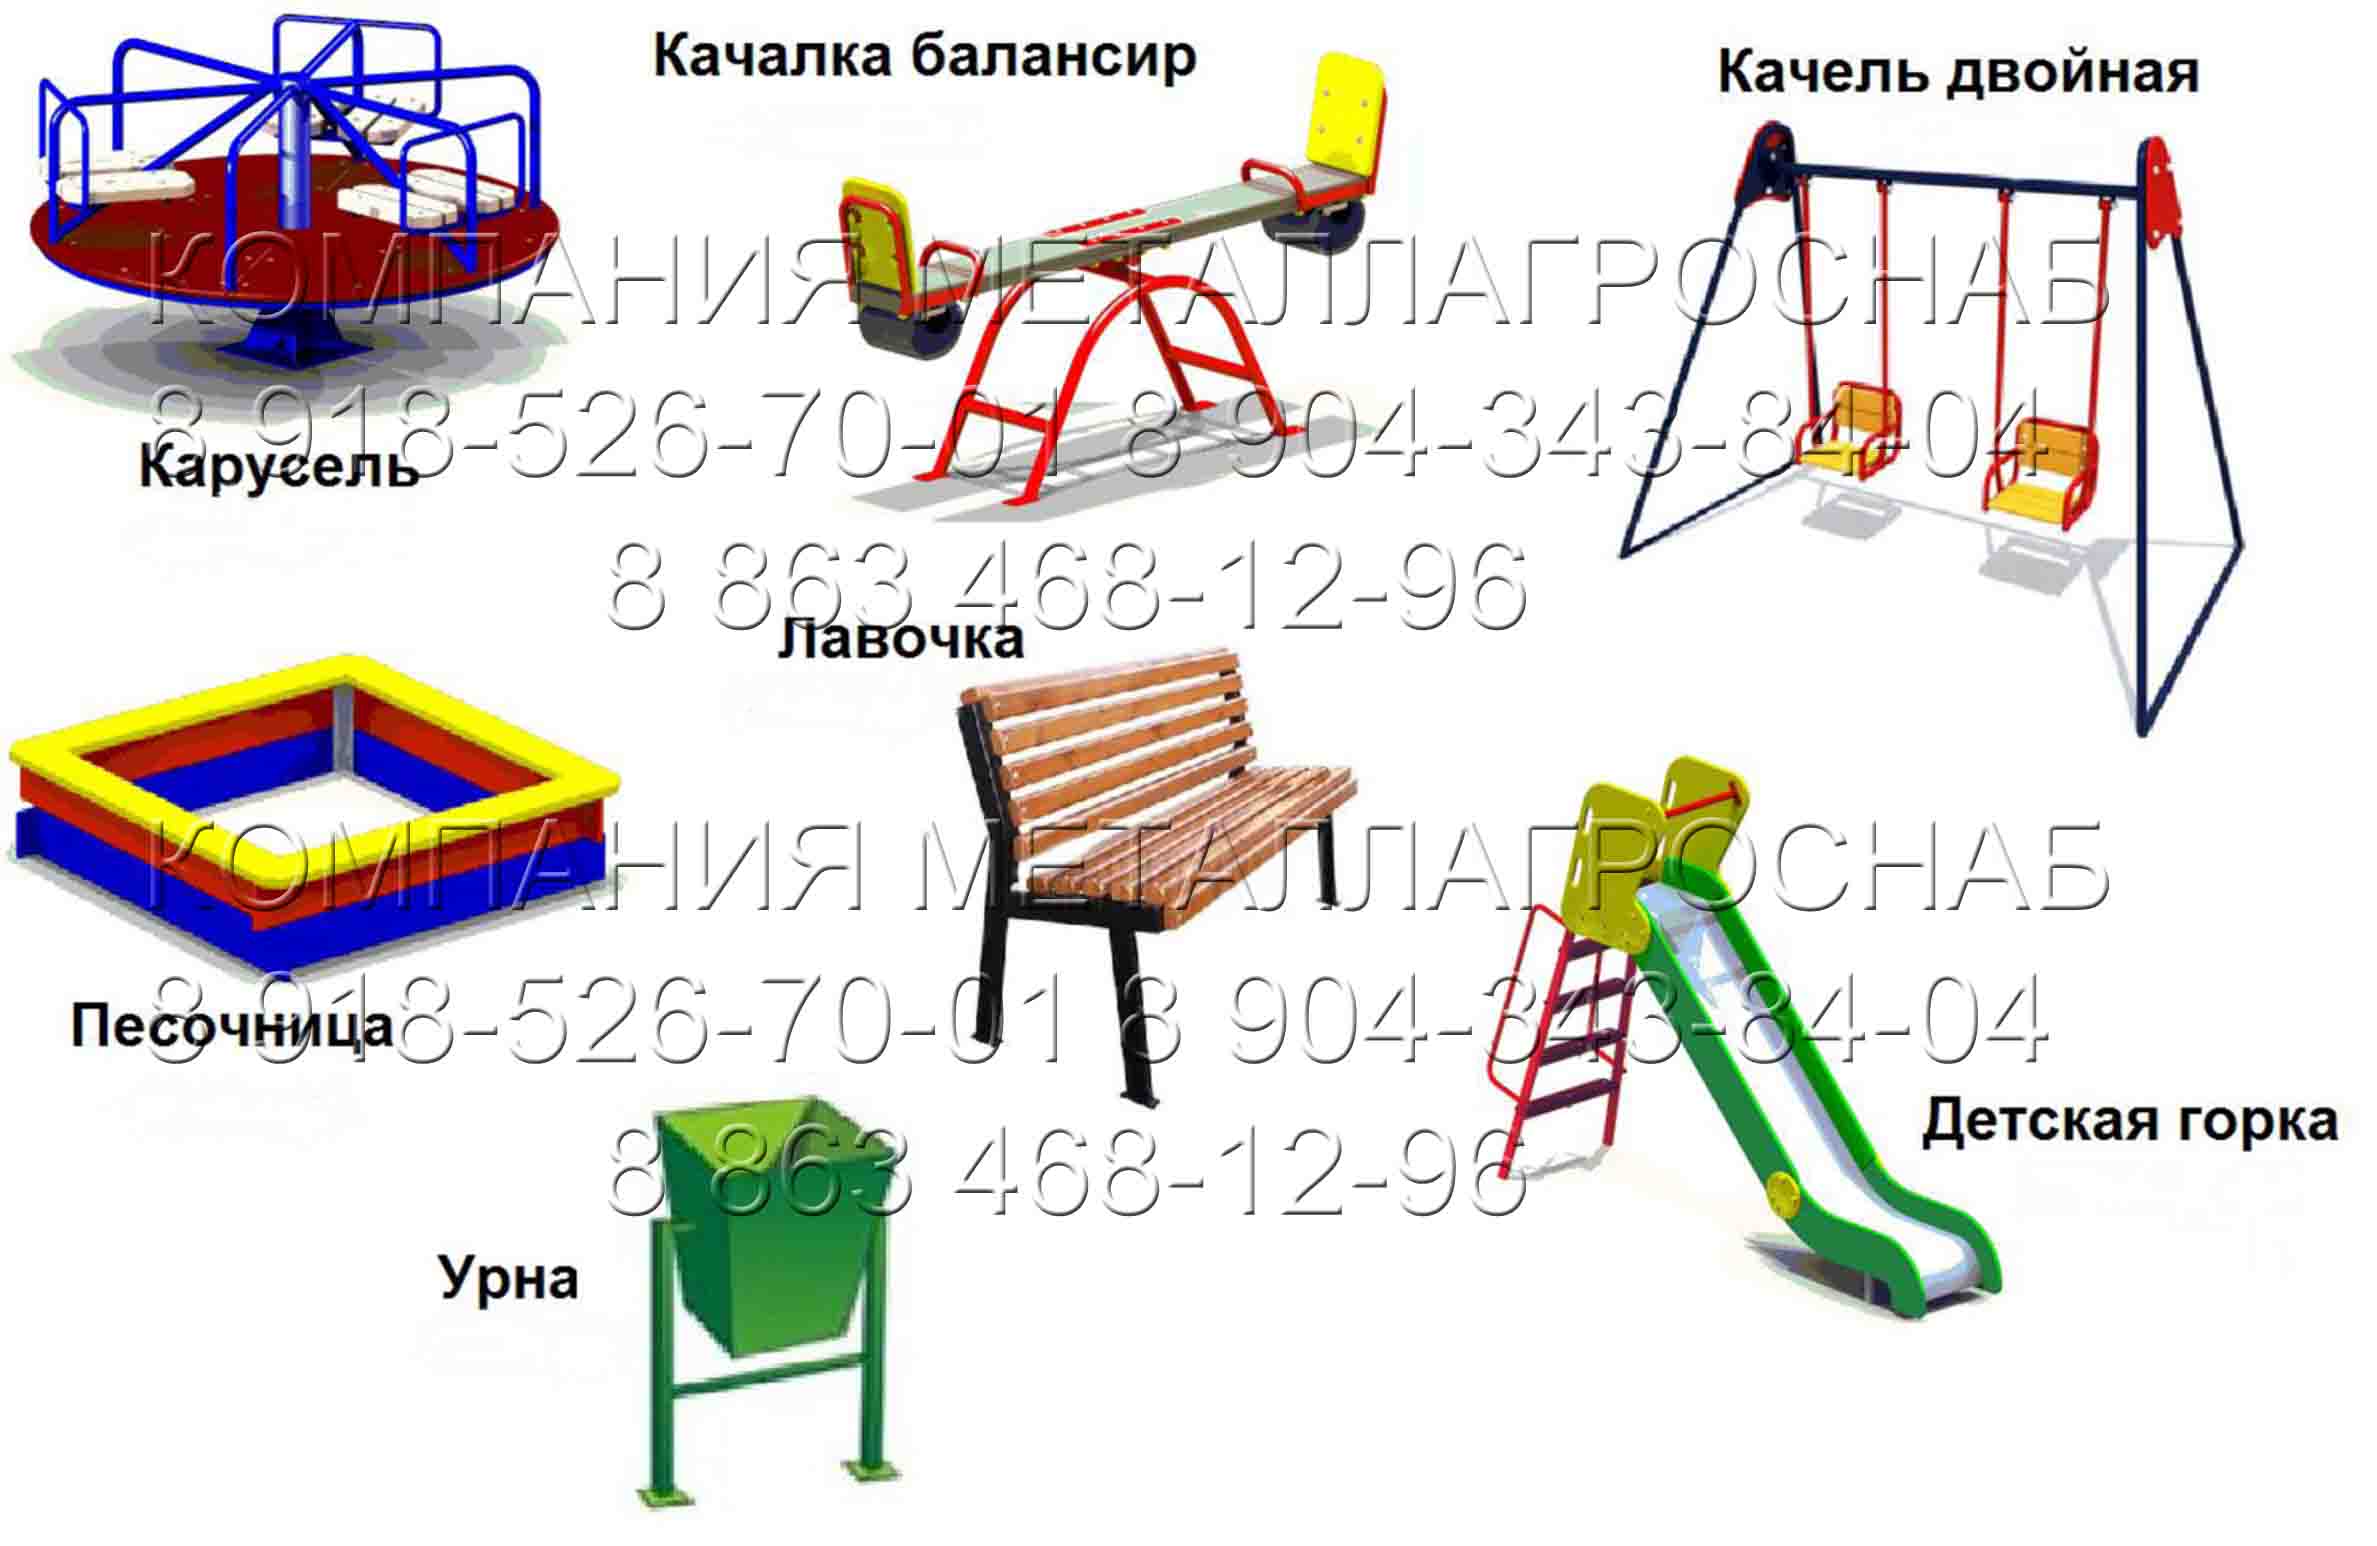 Детская игровая площадка для улицы - купить недорого,по выгодной цене в Таганроге!Цена детской игровой площадки 110000 рублей!